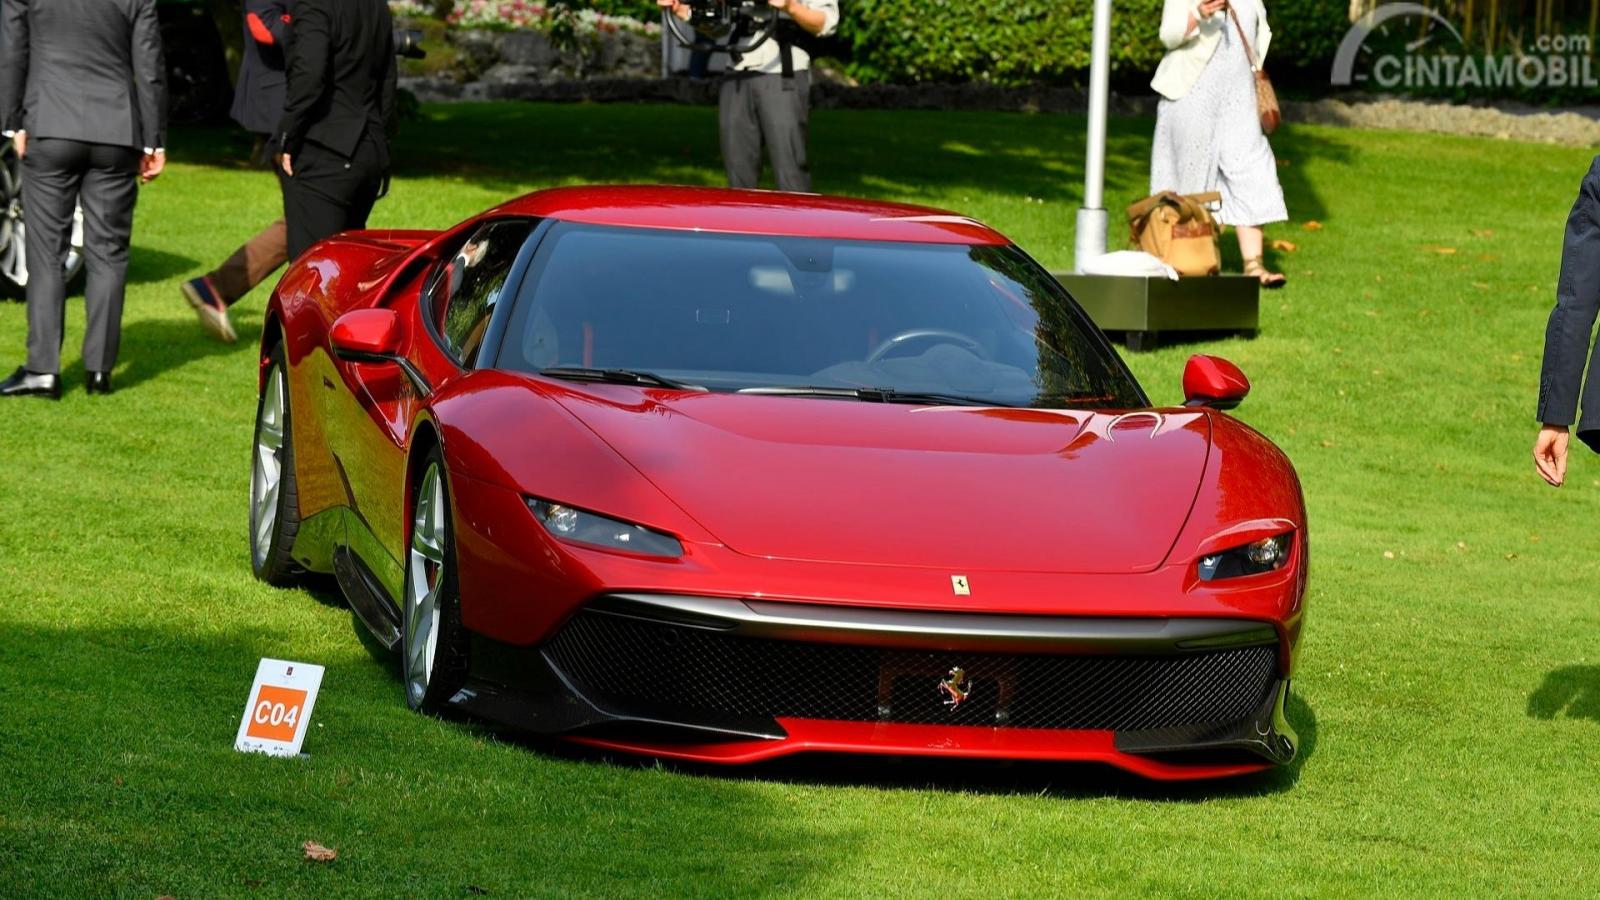 Sangat Eksklusif Mobil Mobil Ferrari Ini Hanya Ada 1 Unit Di Dunia